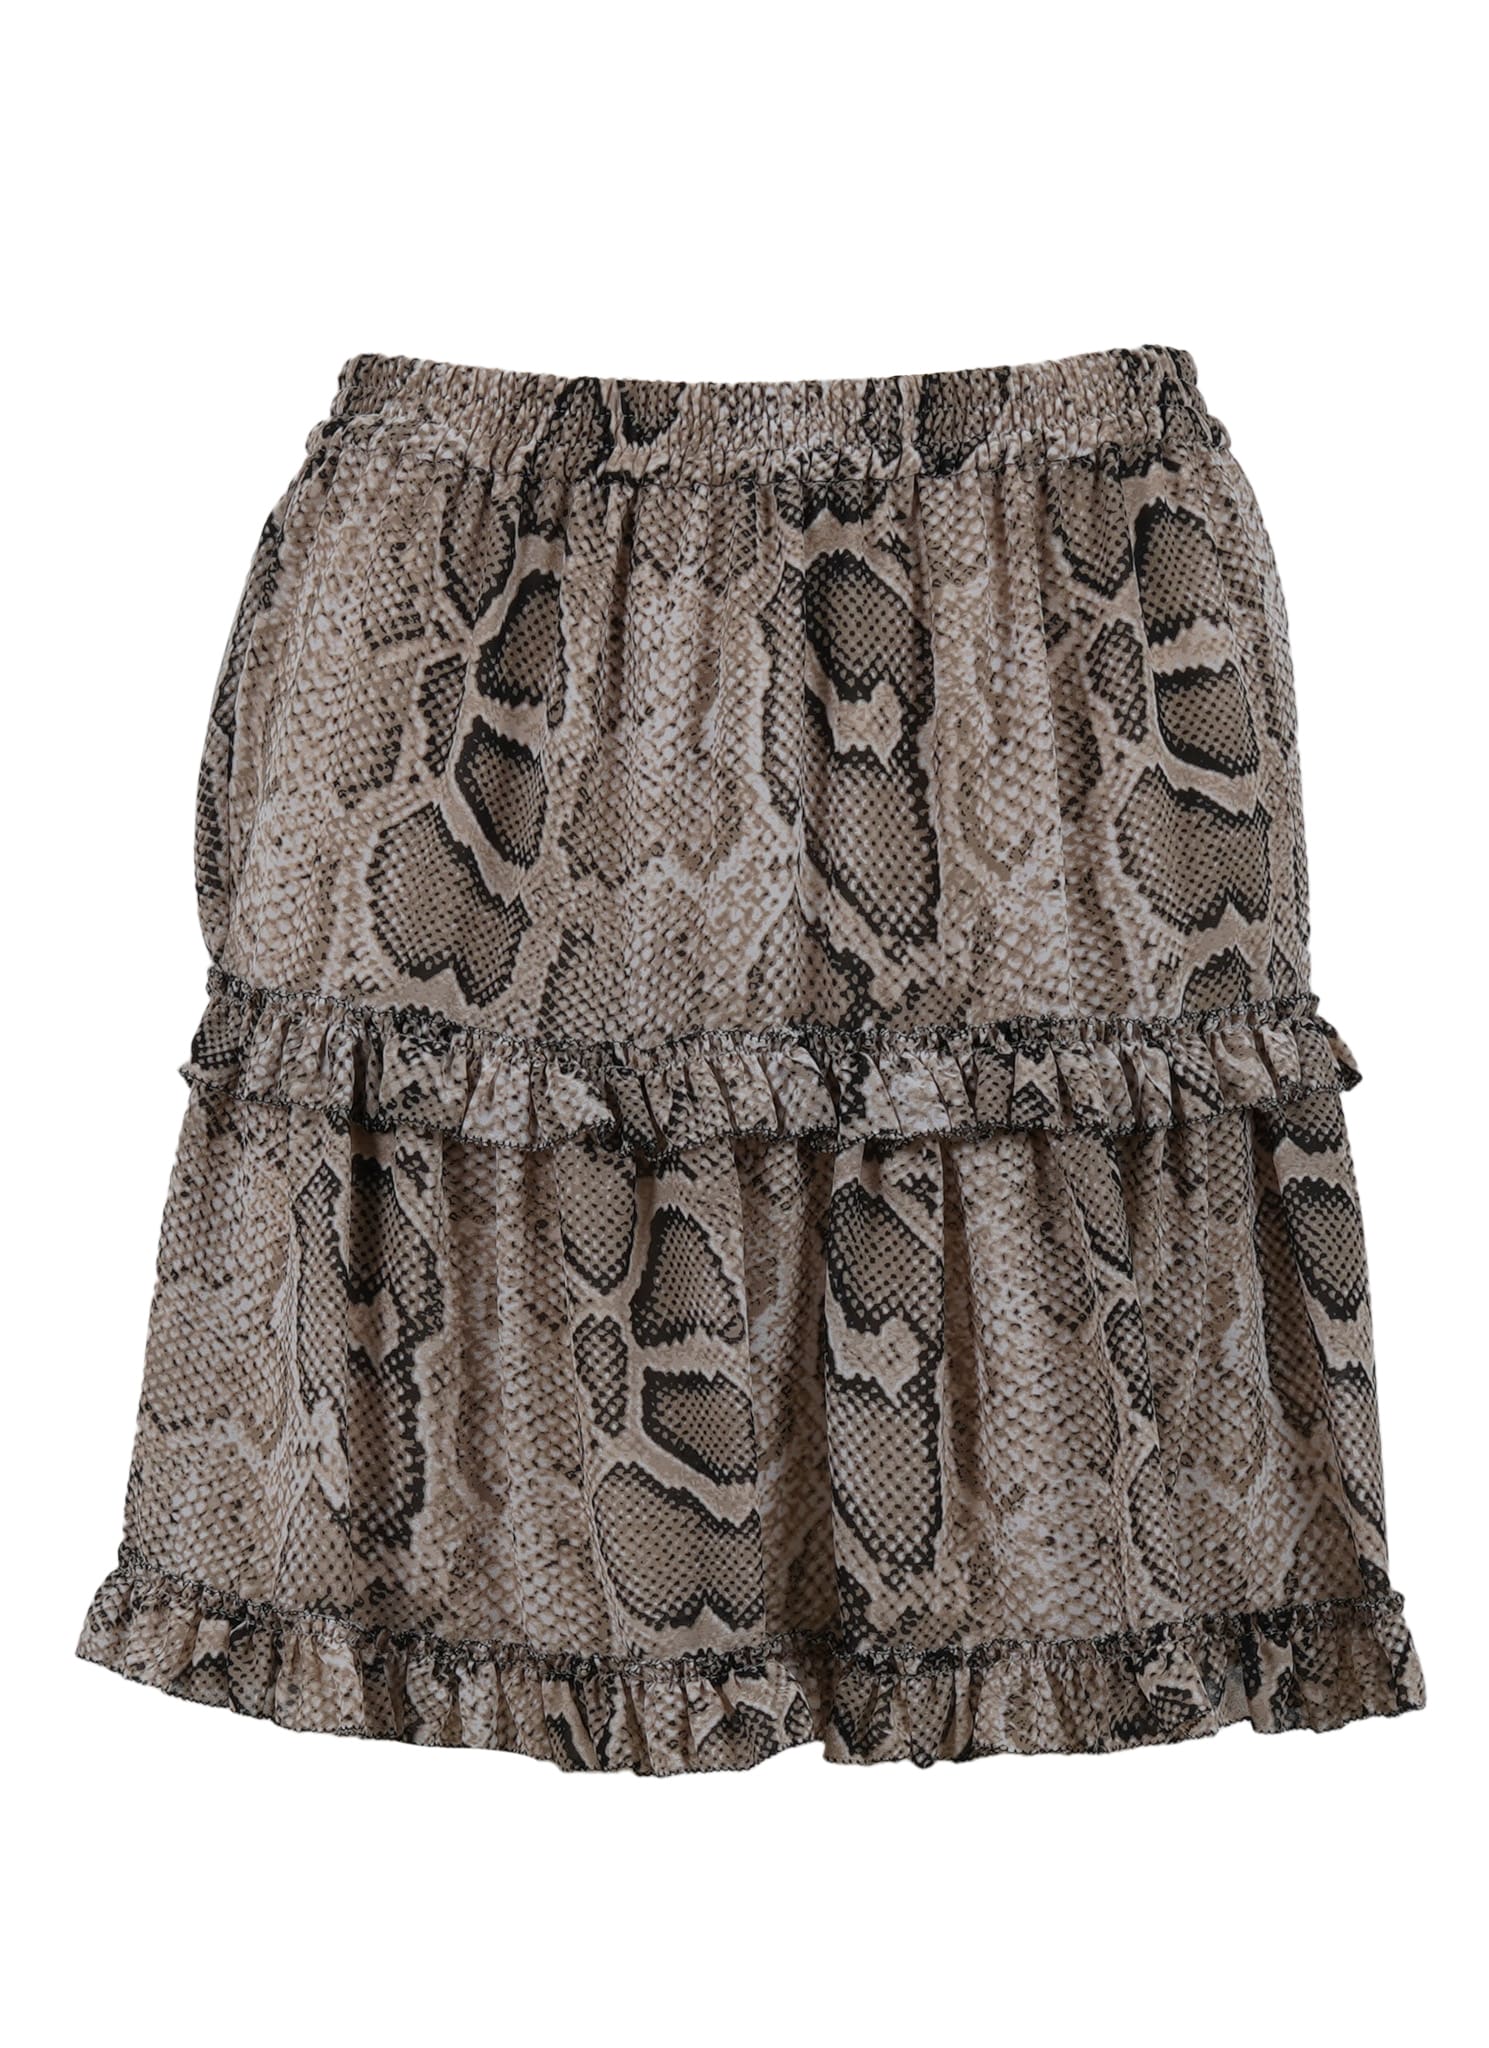 Michael Kors Super Snake Mini Skirt Skirt